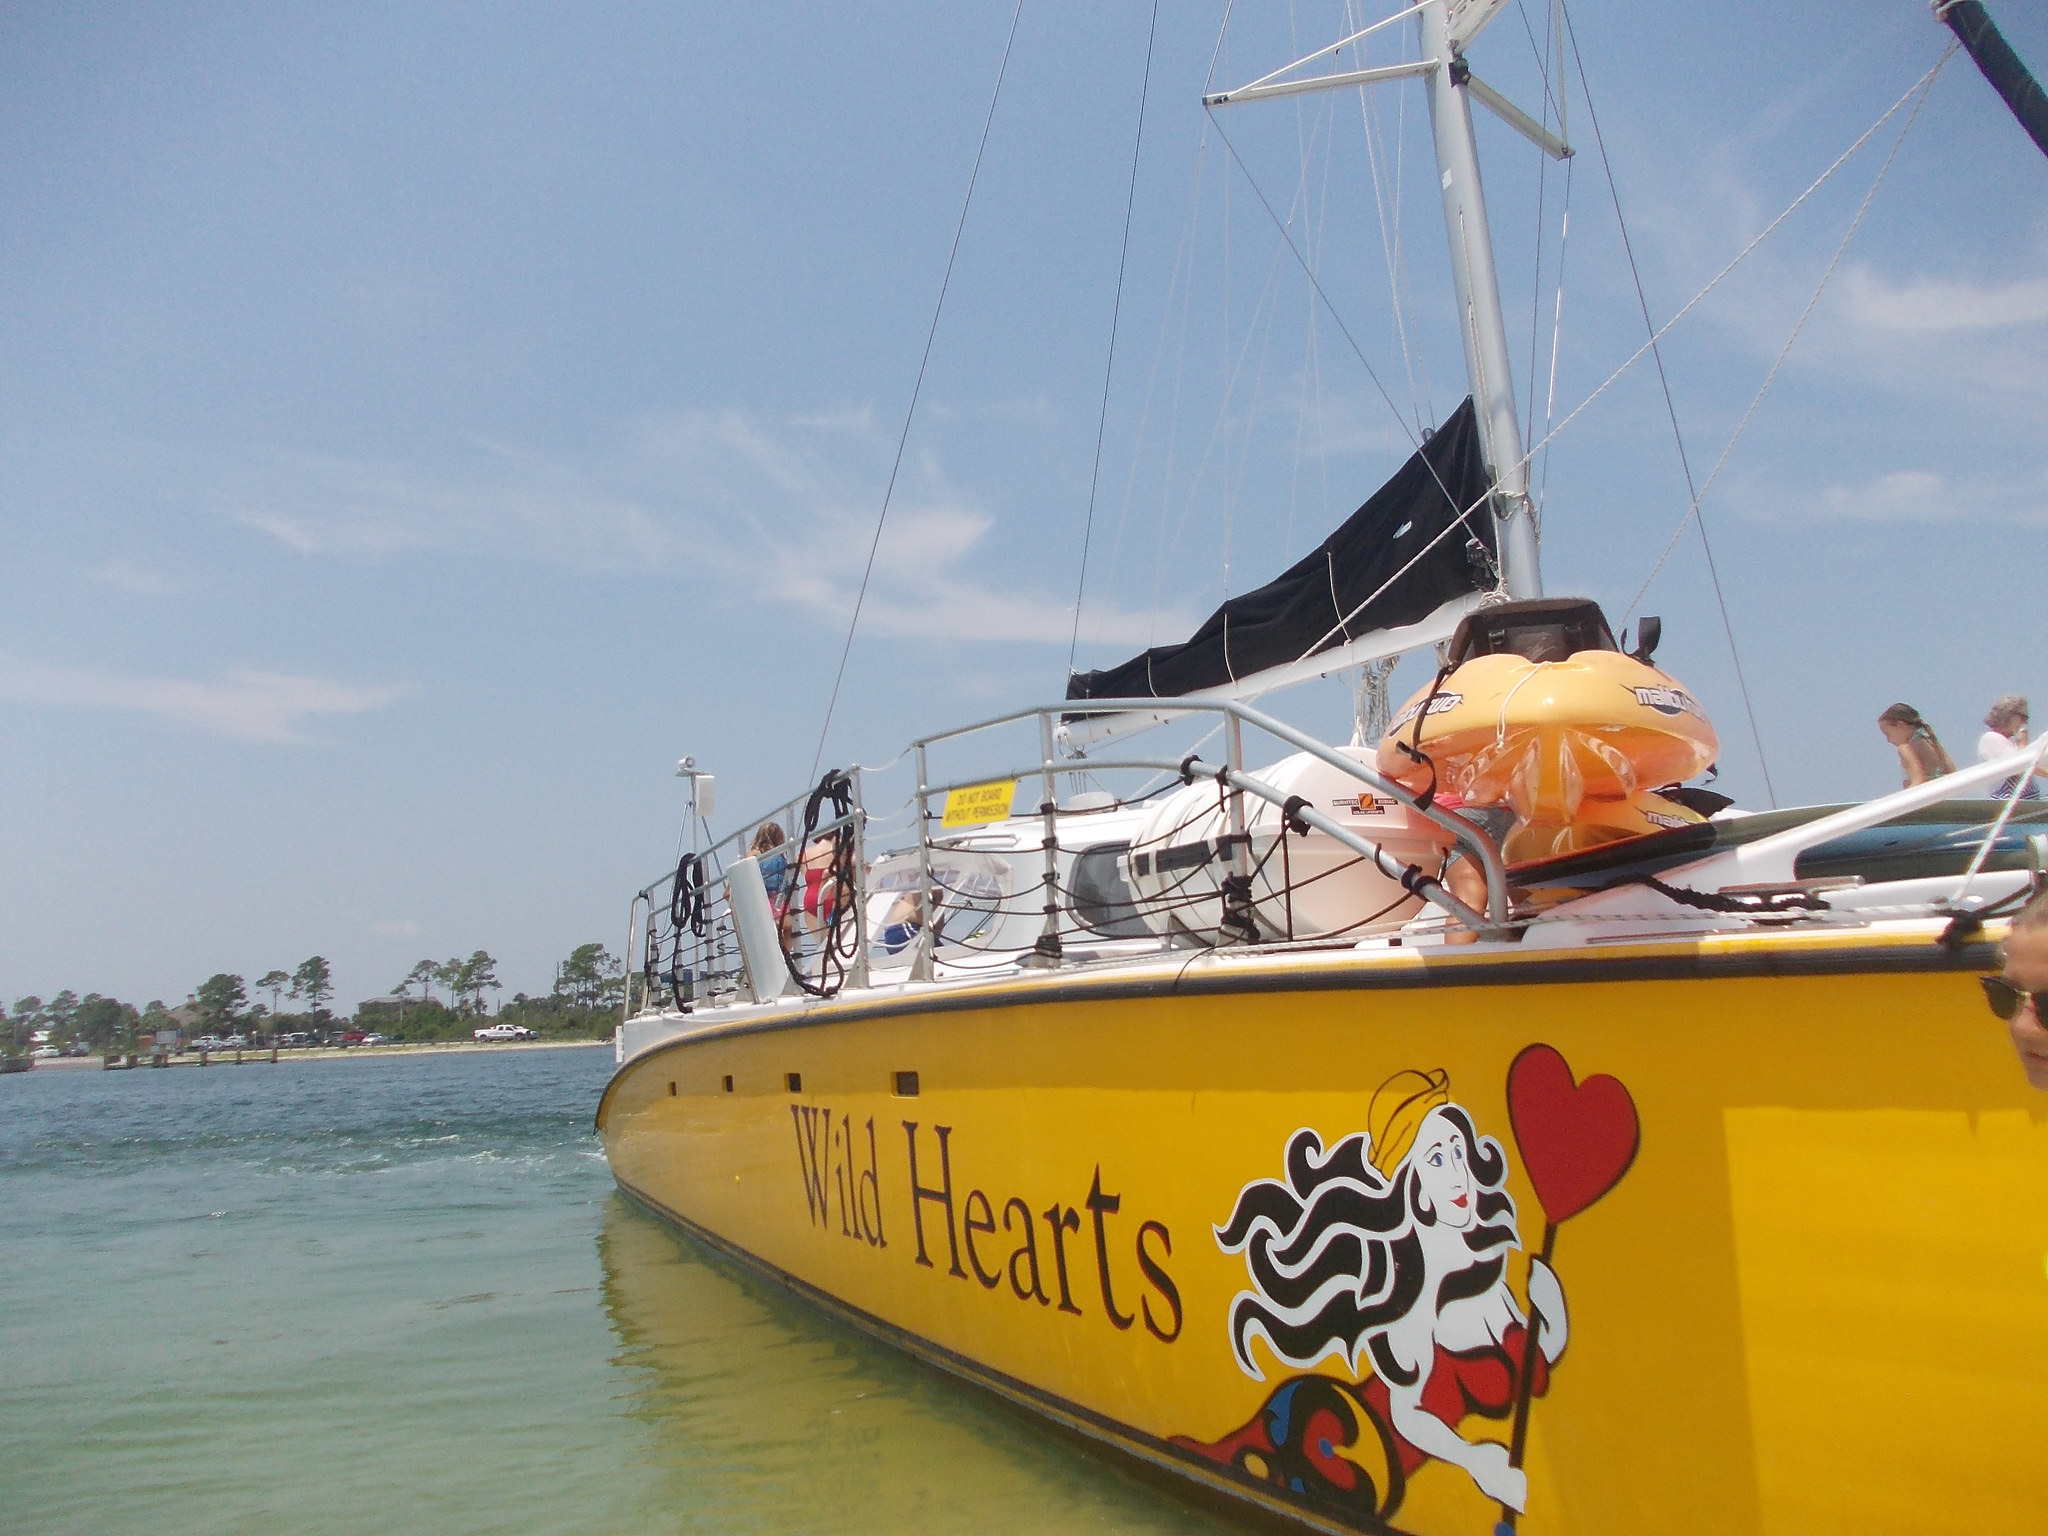 Sail Wild Hearts Catamaran